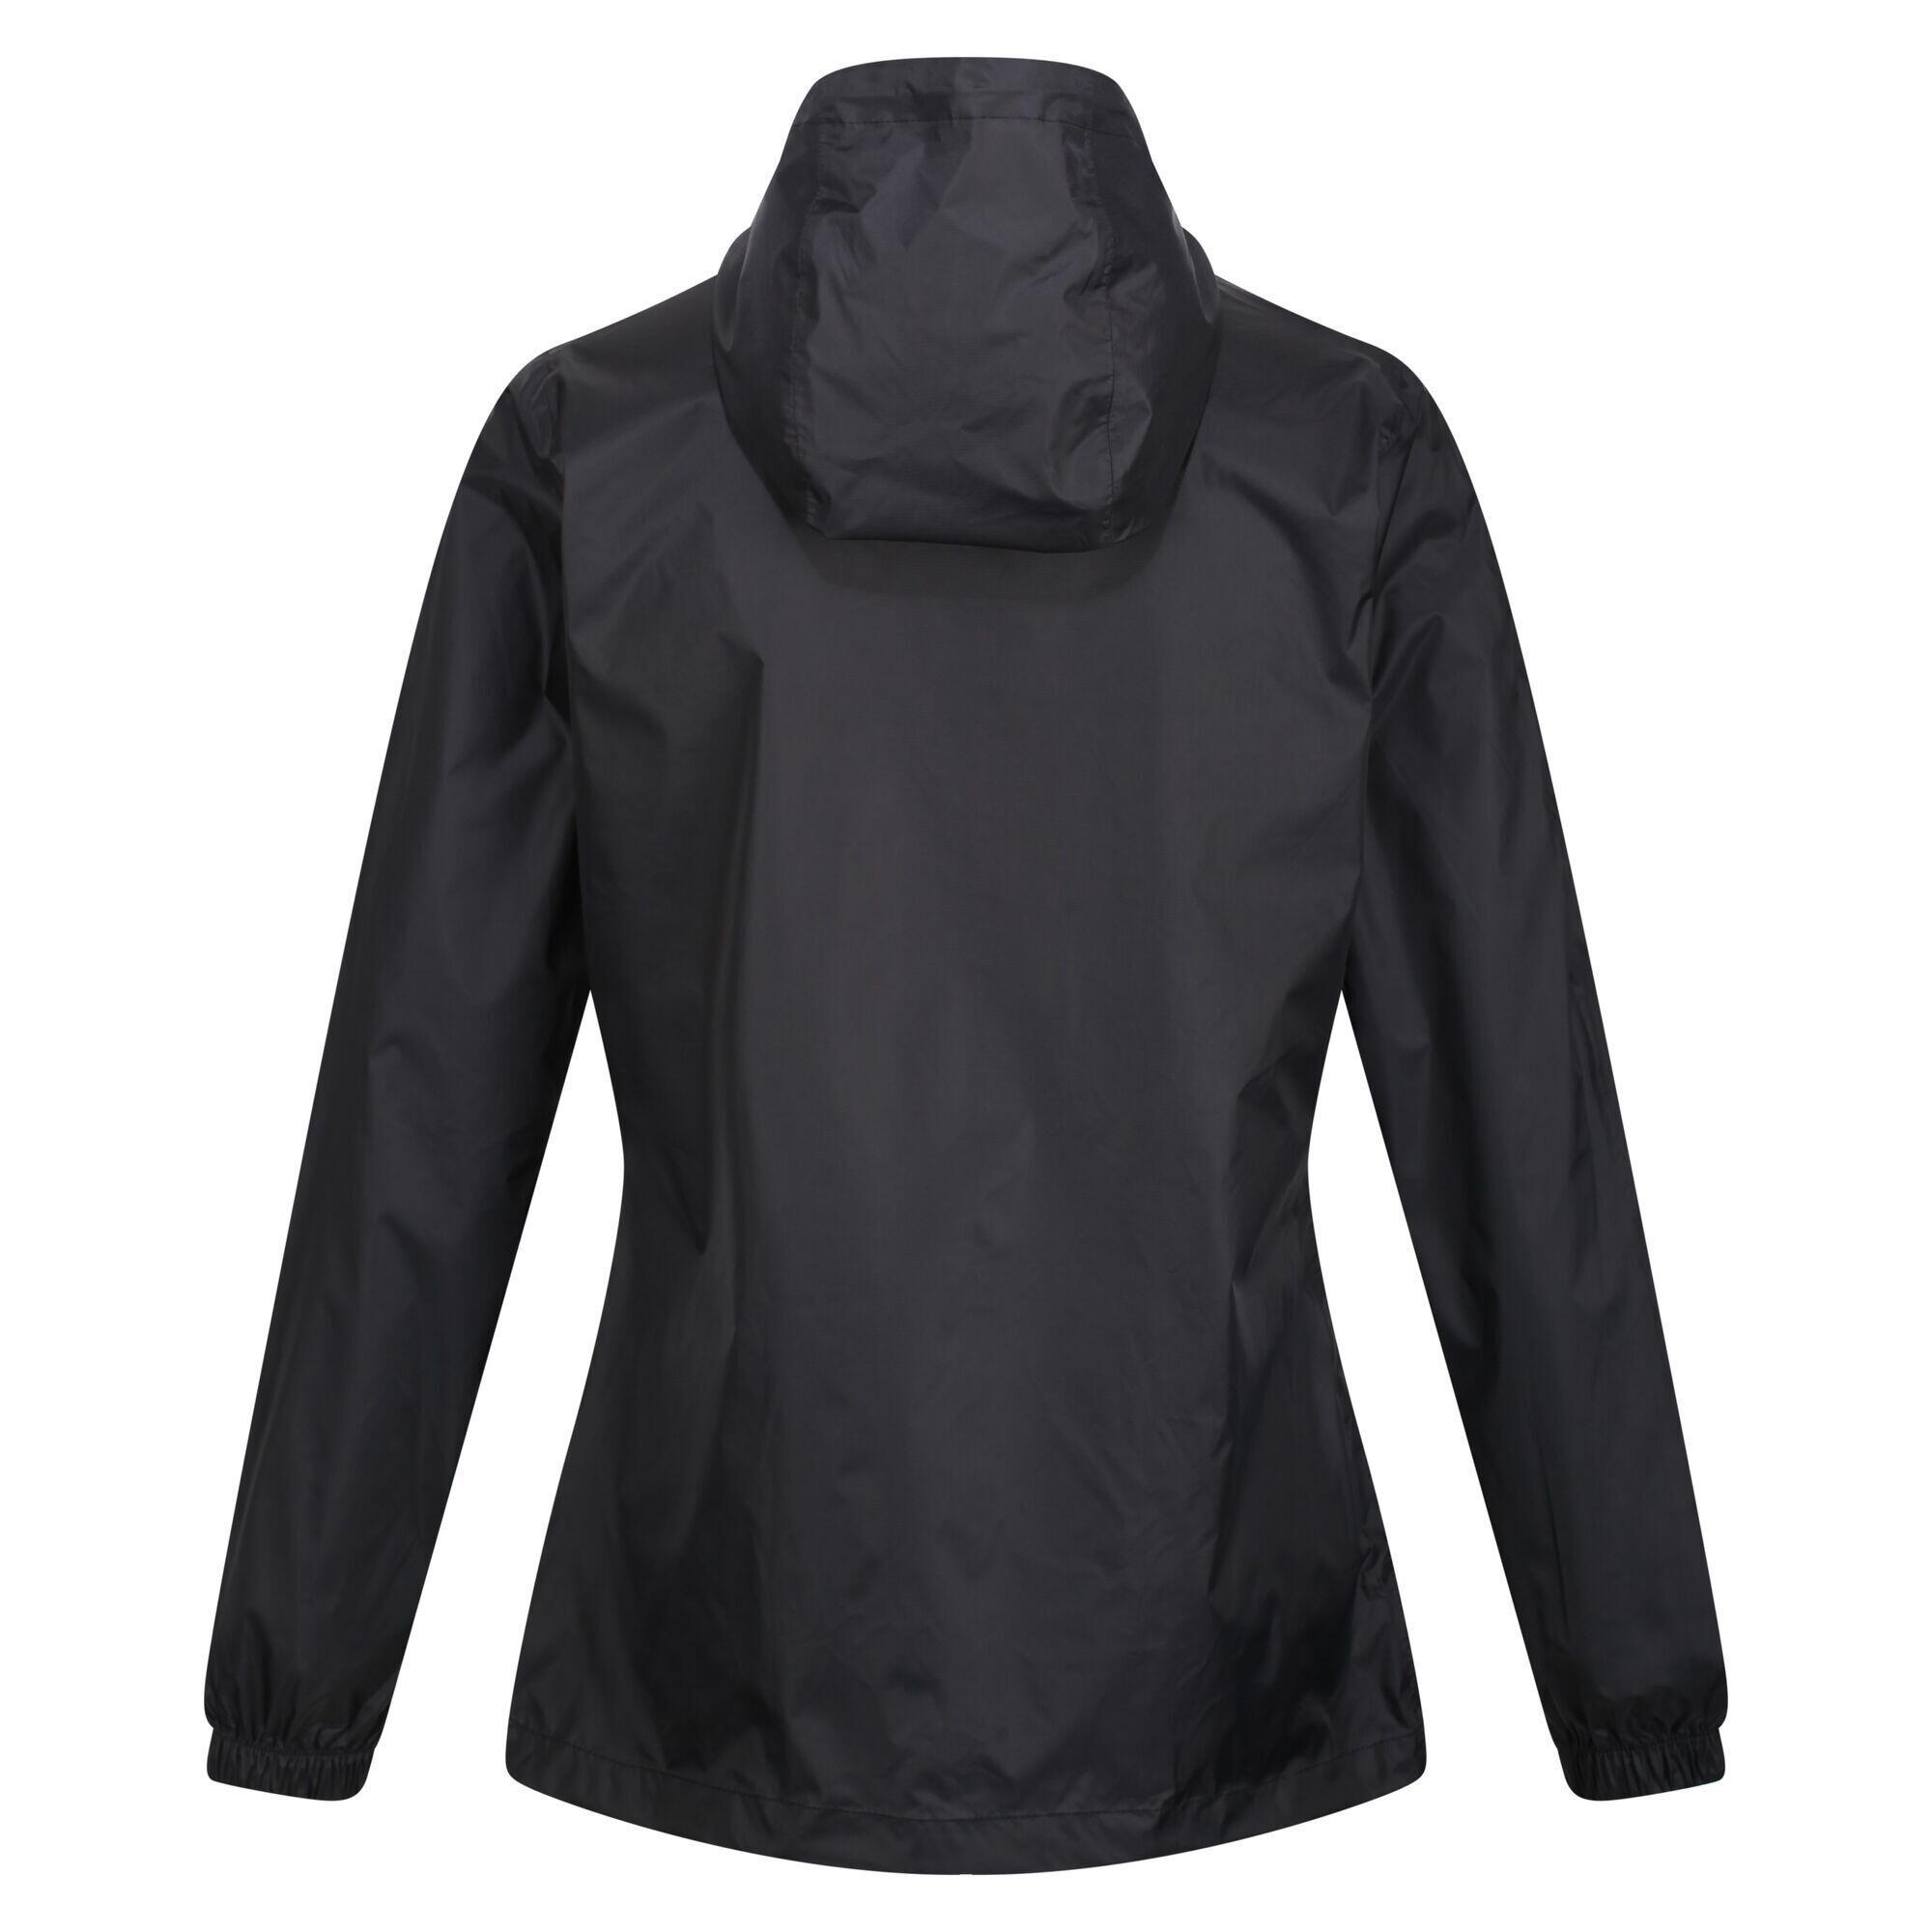 Womens/Ladies Packaway Waterproof Jacket (Black) 2/5